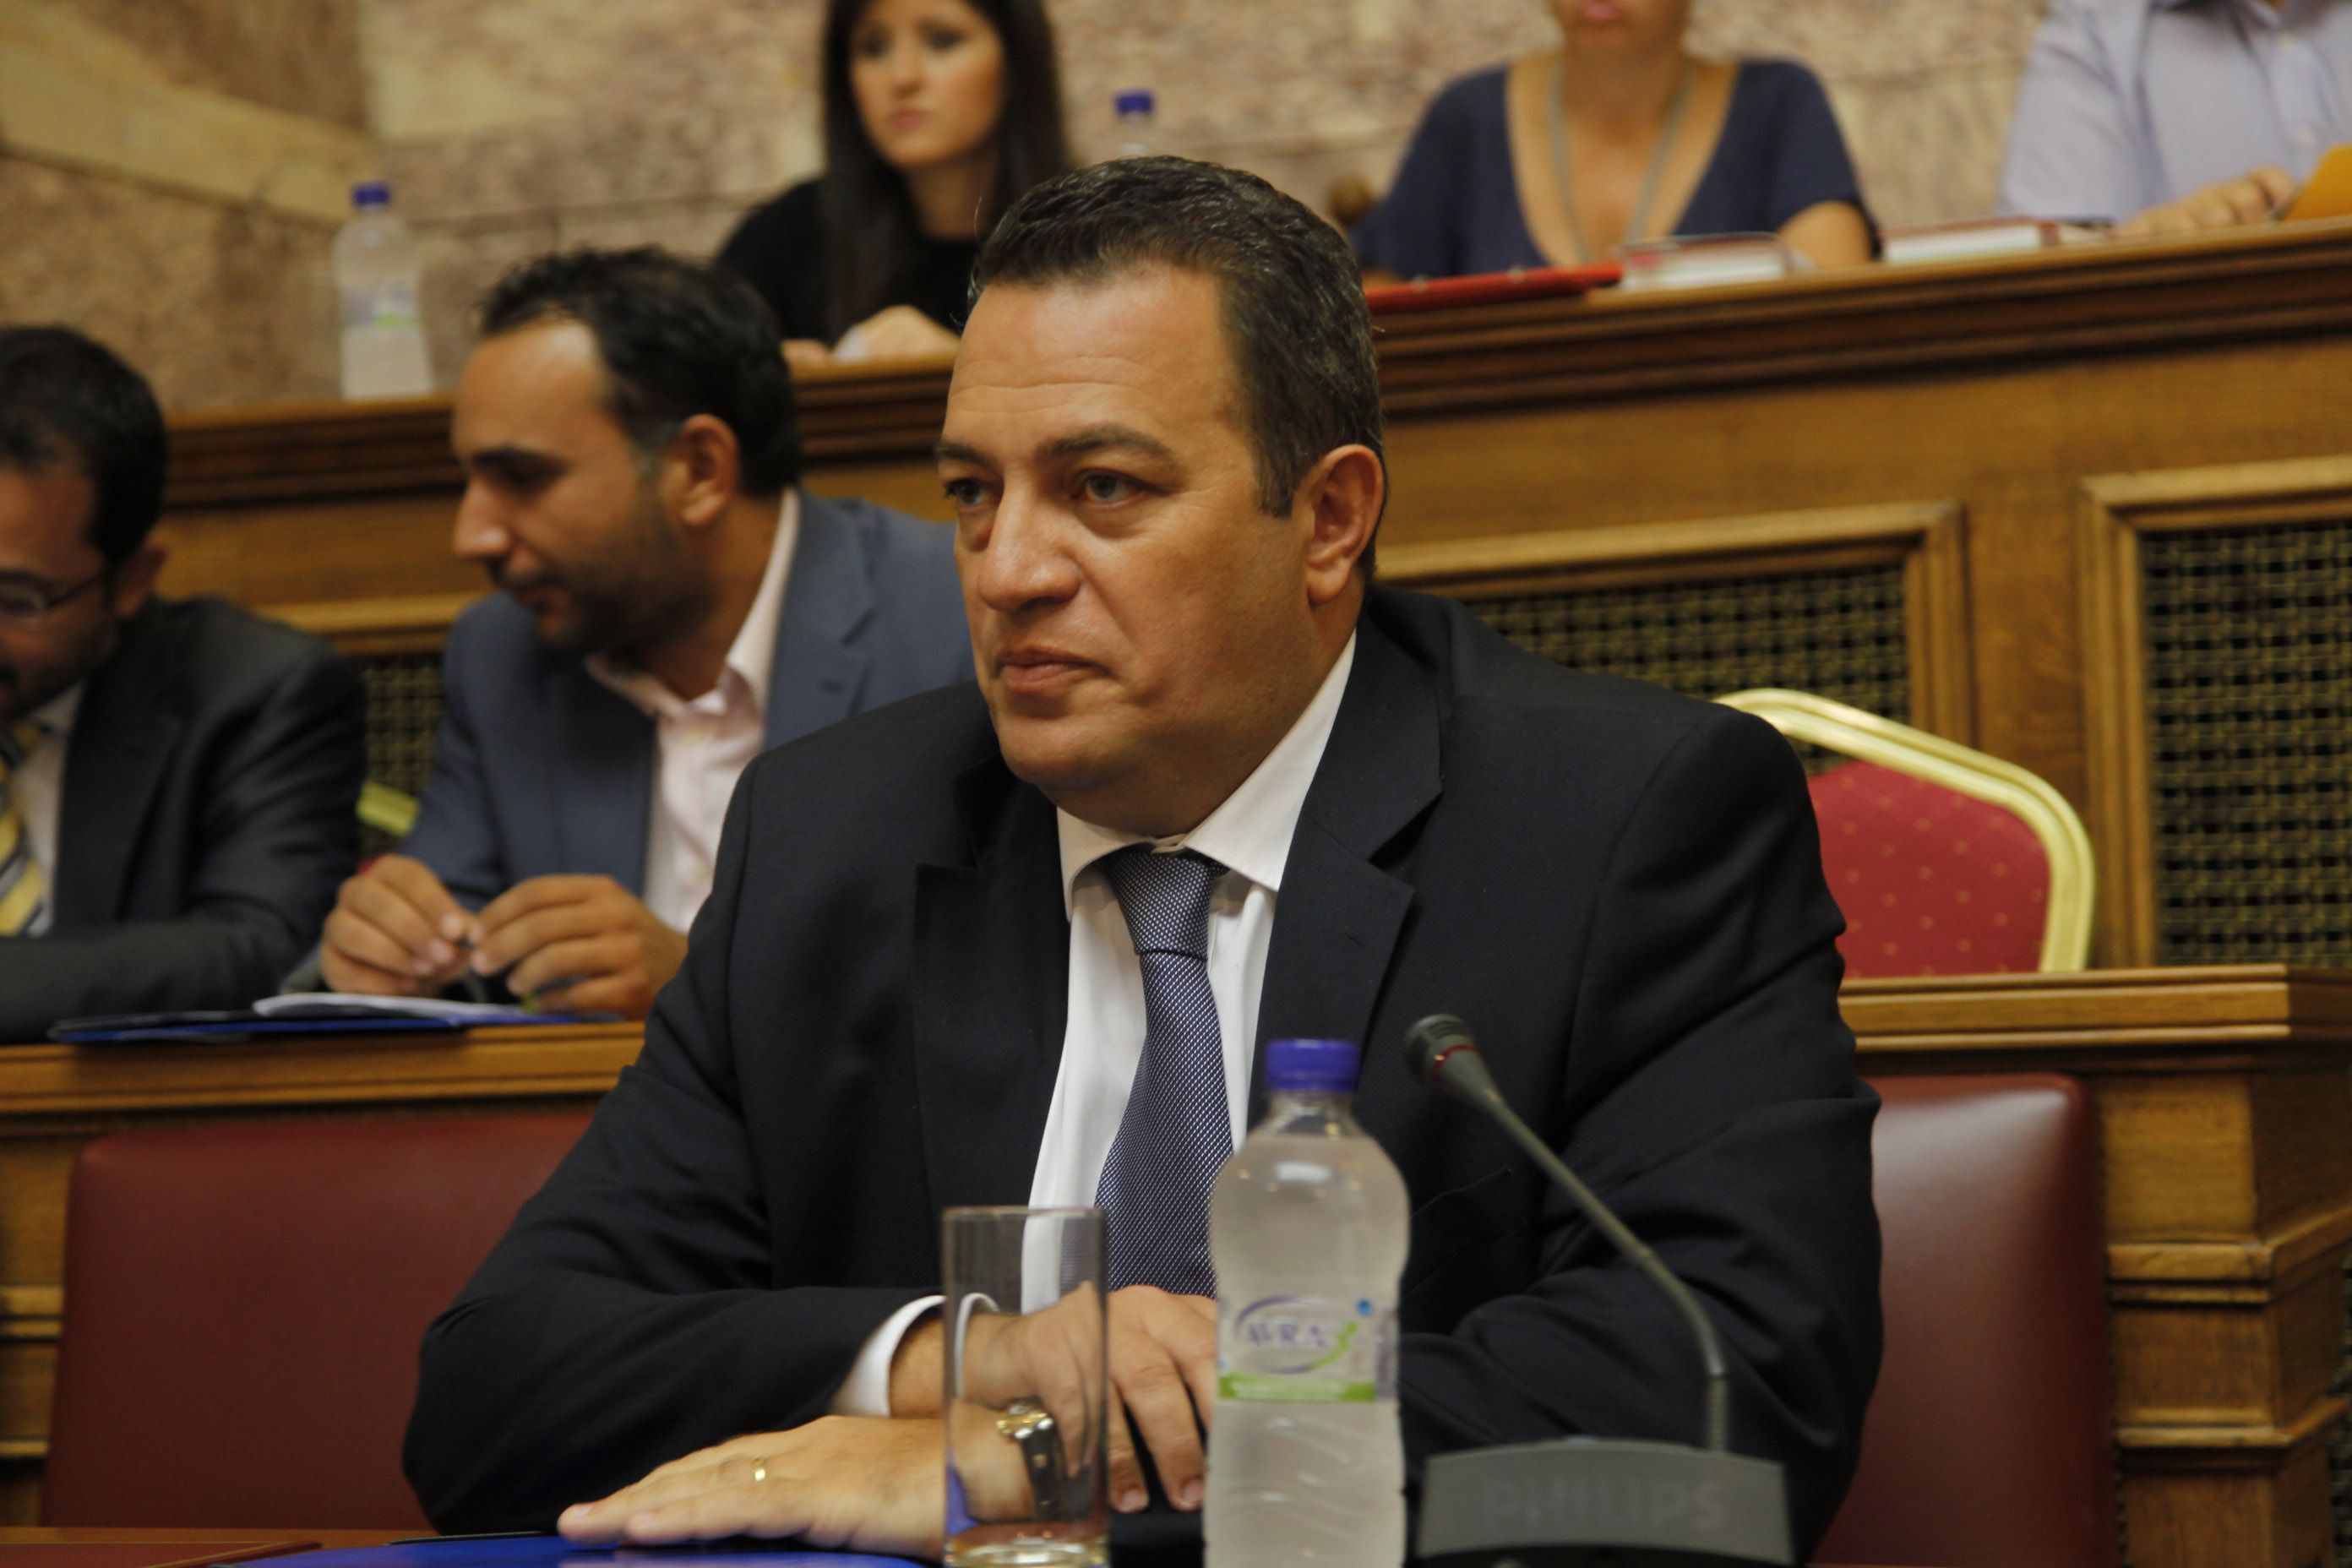 Ιδιωτικά πανεπιστήμια και εκλογές κάθε 5 χρόνια προτείνει ο Στυλιανίδης